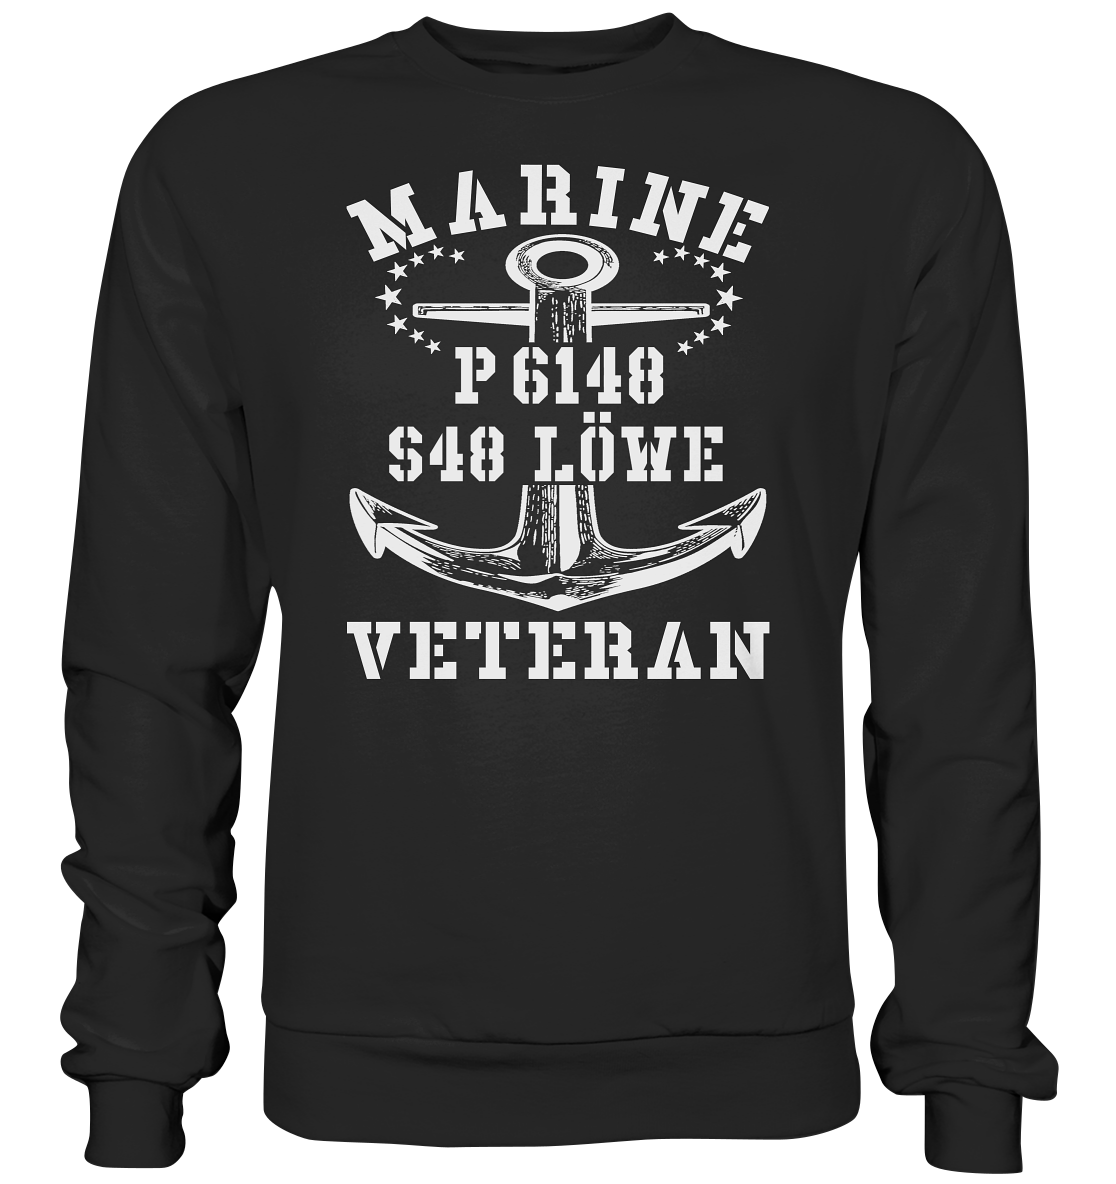 P6148 S48 LÖWE Marine Veteran - Premium Sweatshirt